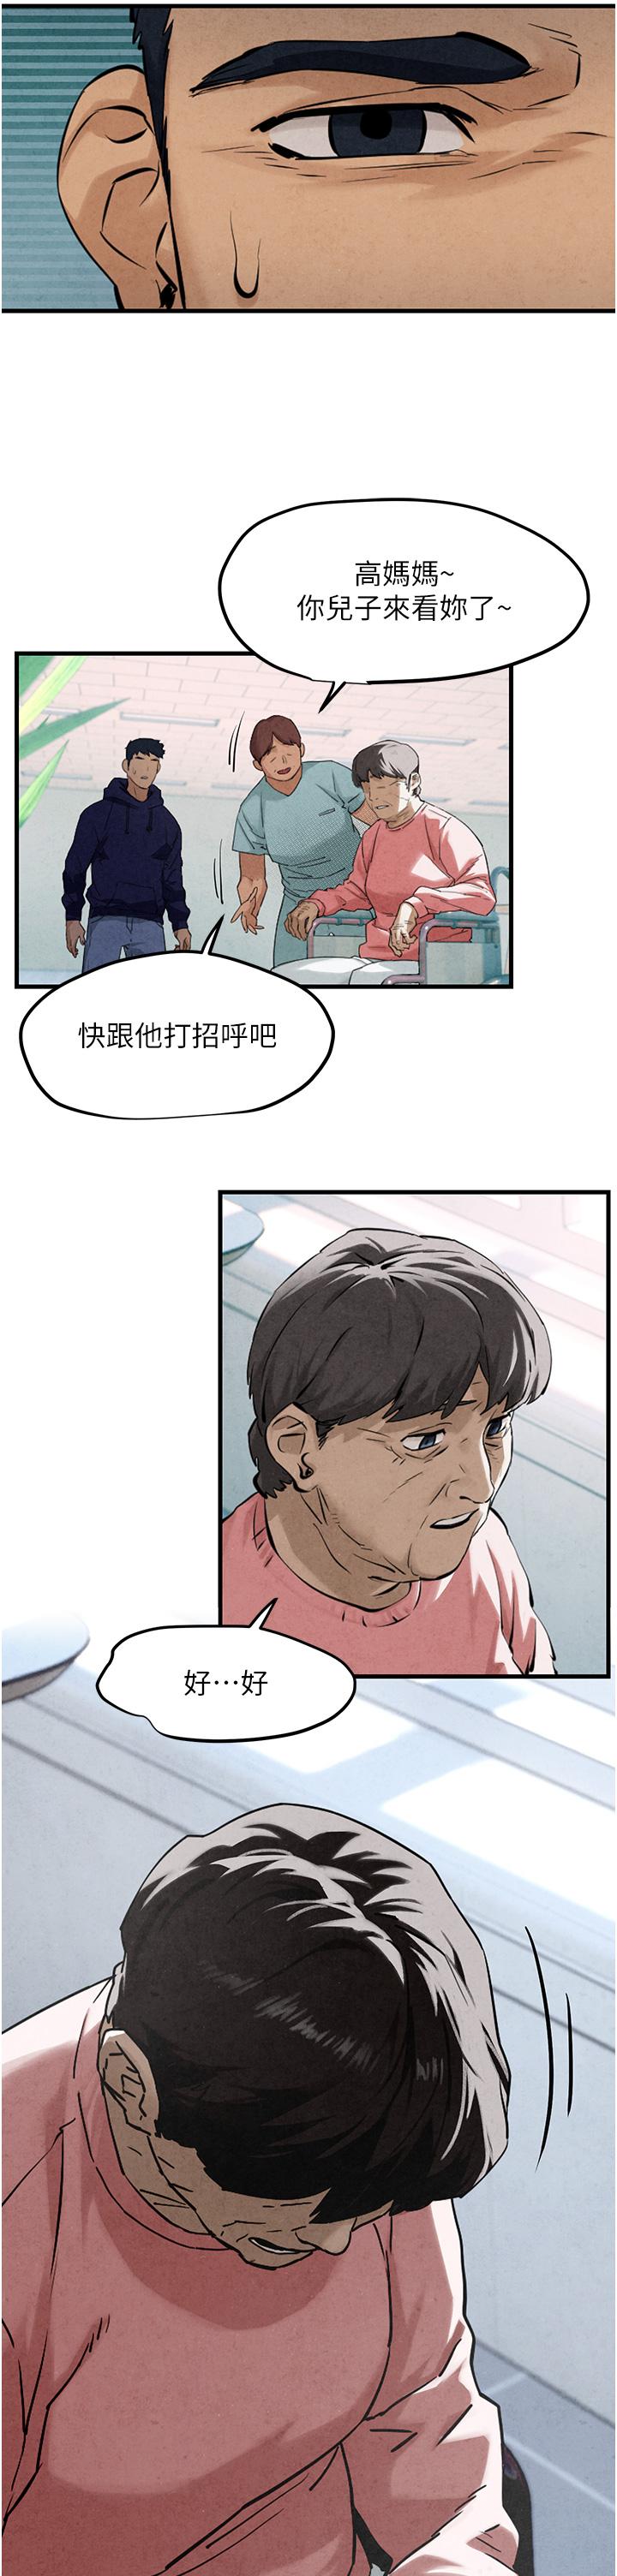 韩国污漫画 欲海交鋒 第2话 第1位顾客:欲求不满的人妻 33